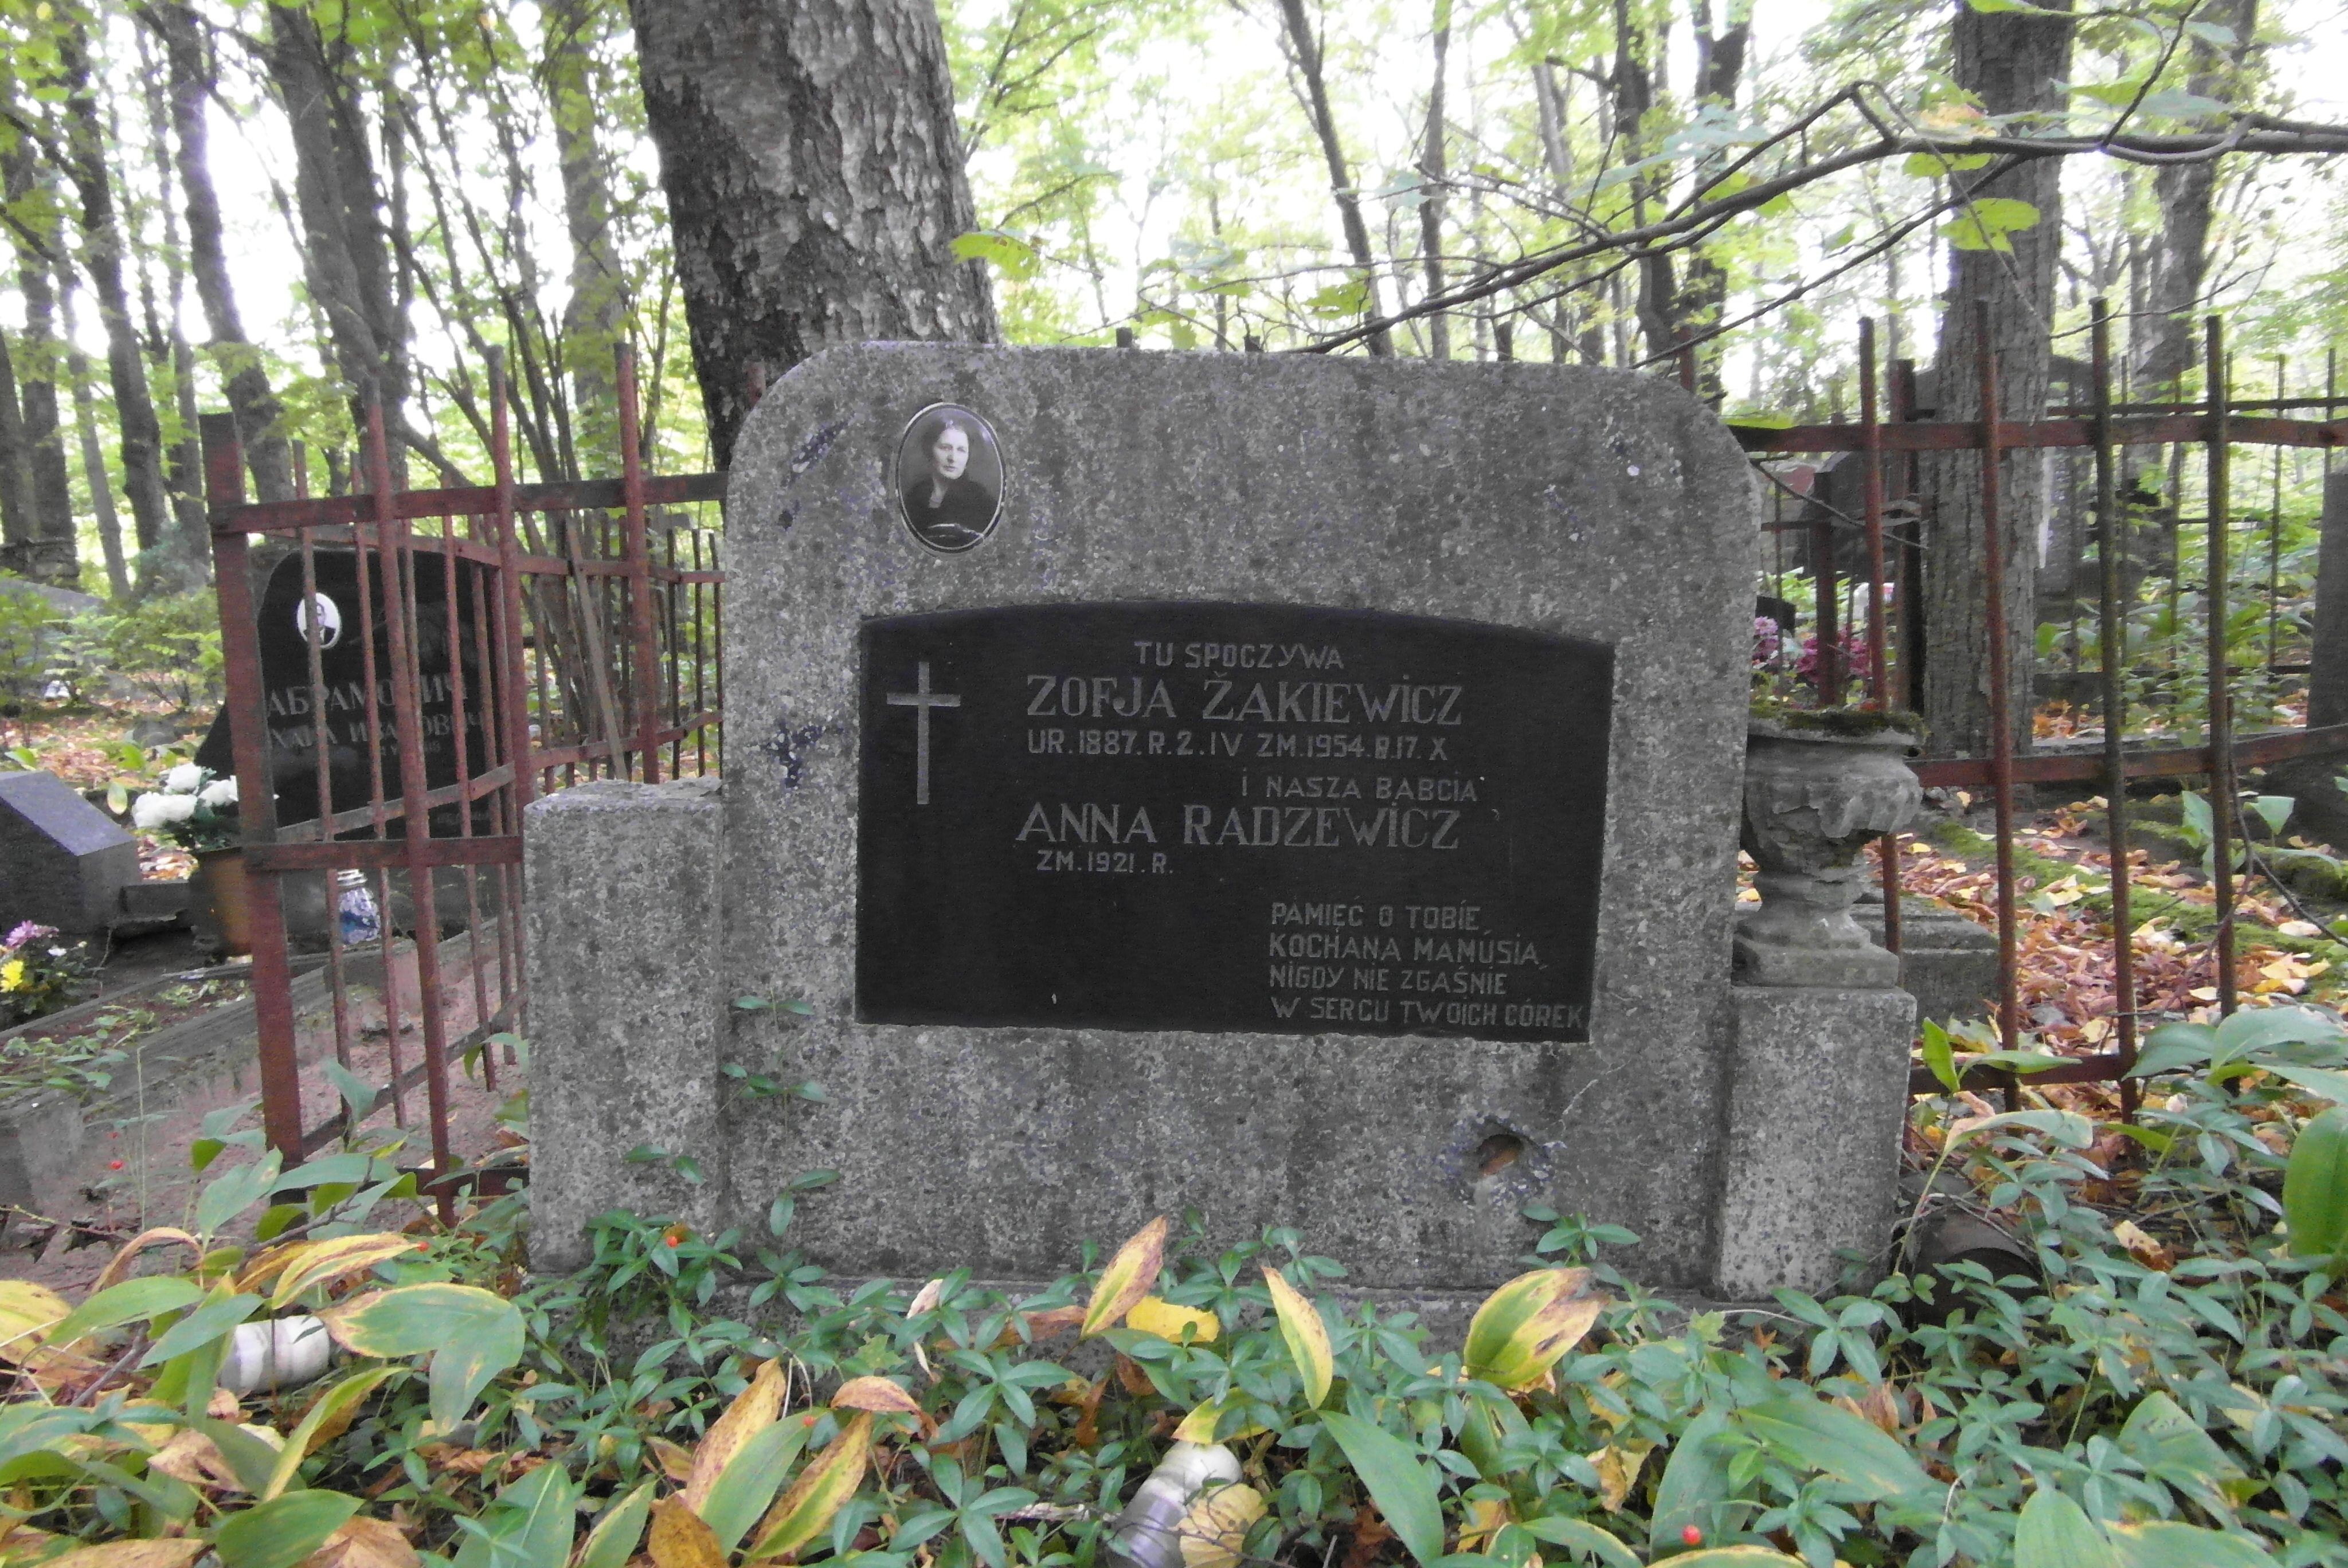 Tombstone of Anna Radziewicz, Zofia Żakiewicz, St Michael's cemetery in Riga, as of 2021.